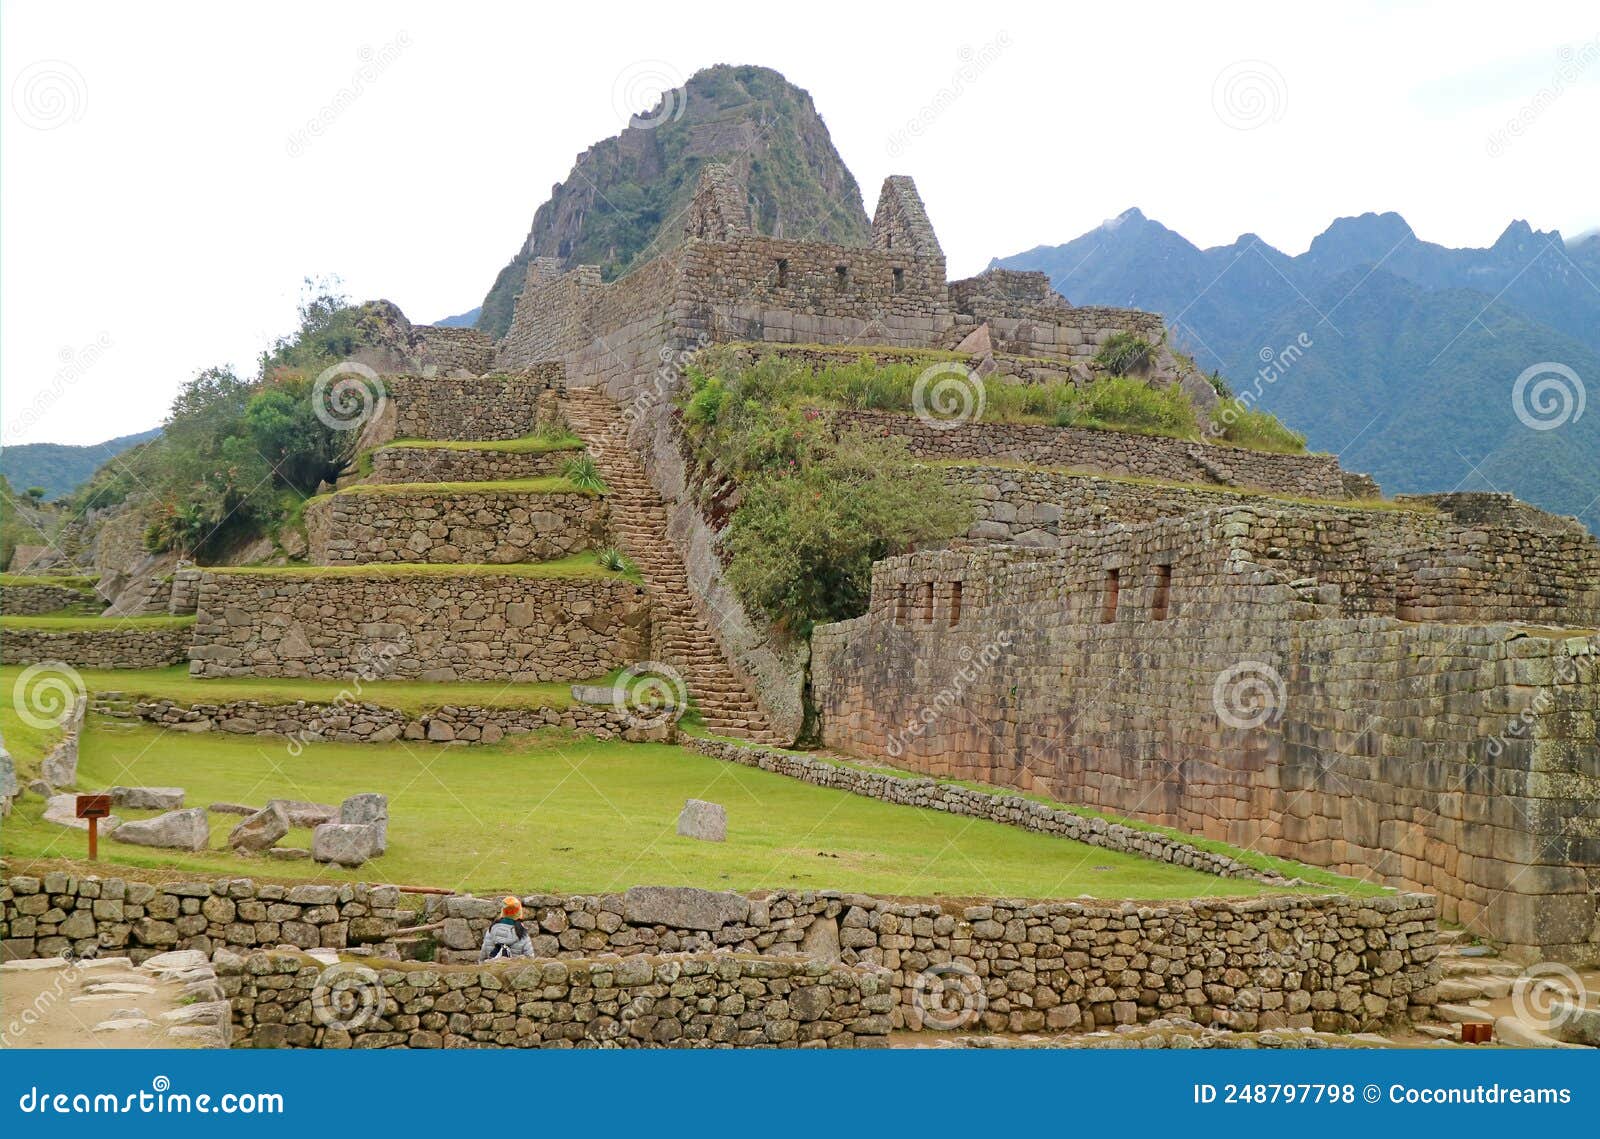 Fantastique Ancienne Inca Ruines De Machu Picchu Citadelle Nouvelle Sept  Merveille Du Site Mondial Dans La Région De Cusco Au Péro Photo stock -  Image du montagne, vacances: 248797798